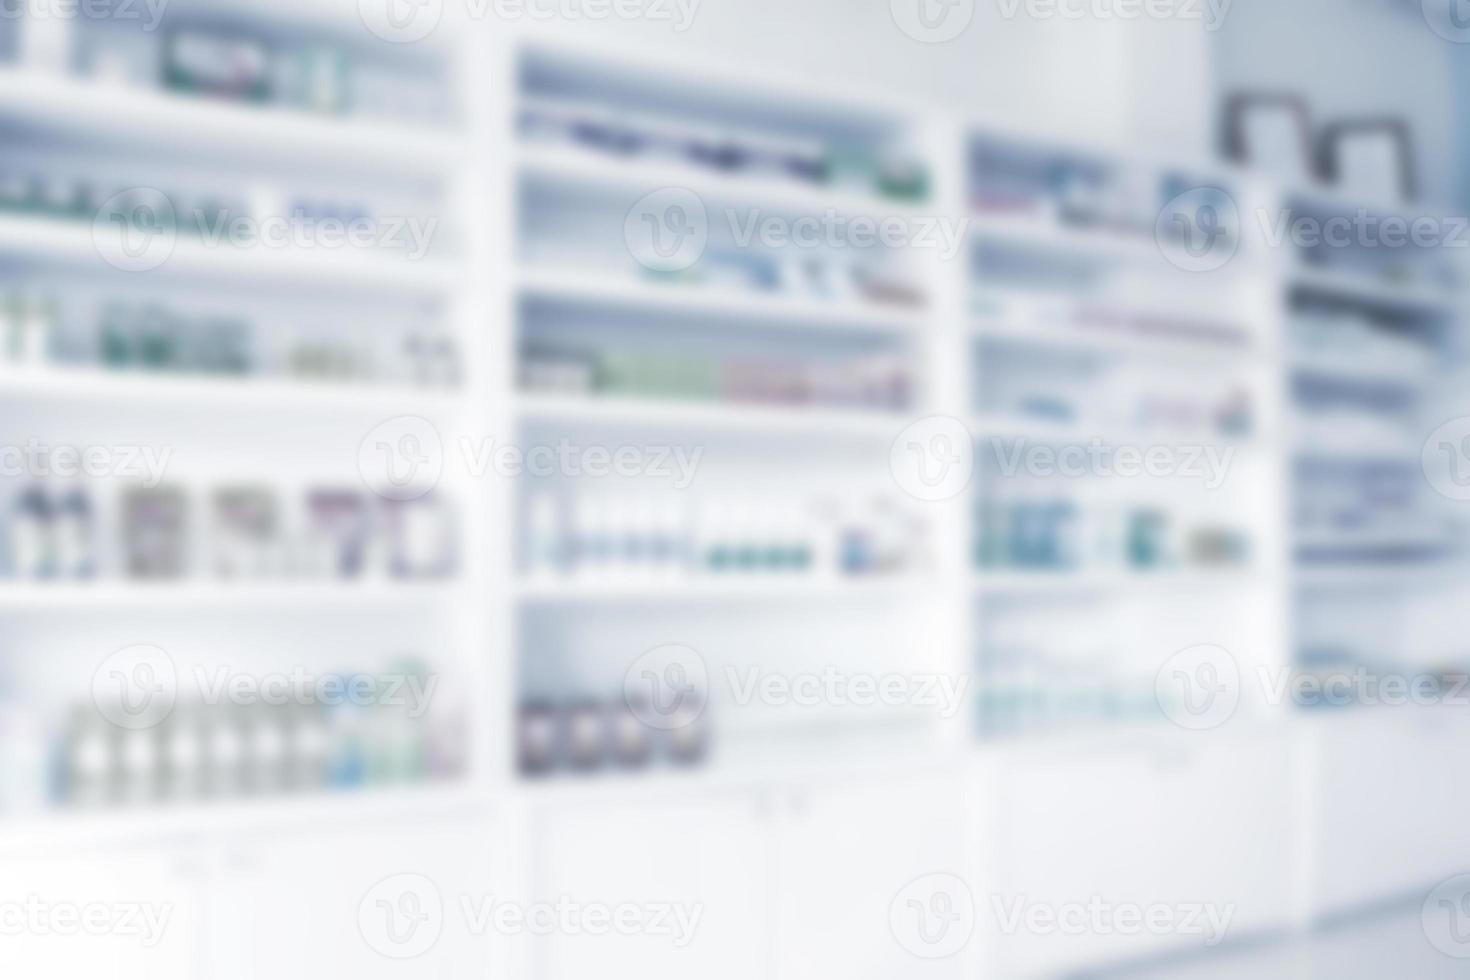 prateleiras de farmácia cheias de medicamentos desfocam o fundo foto